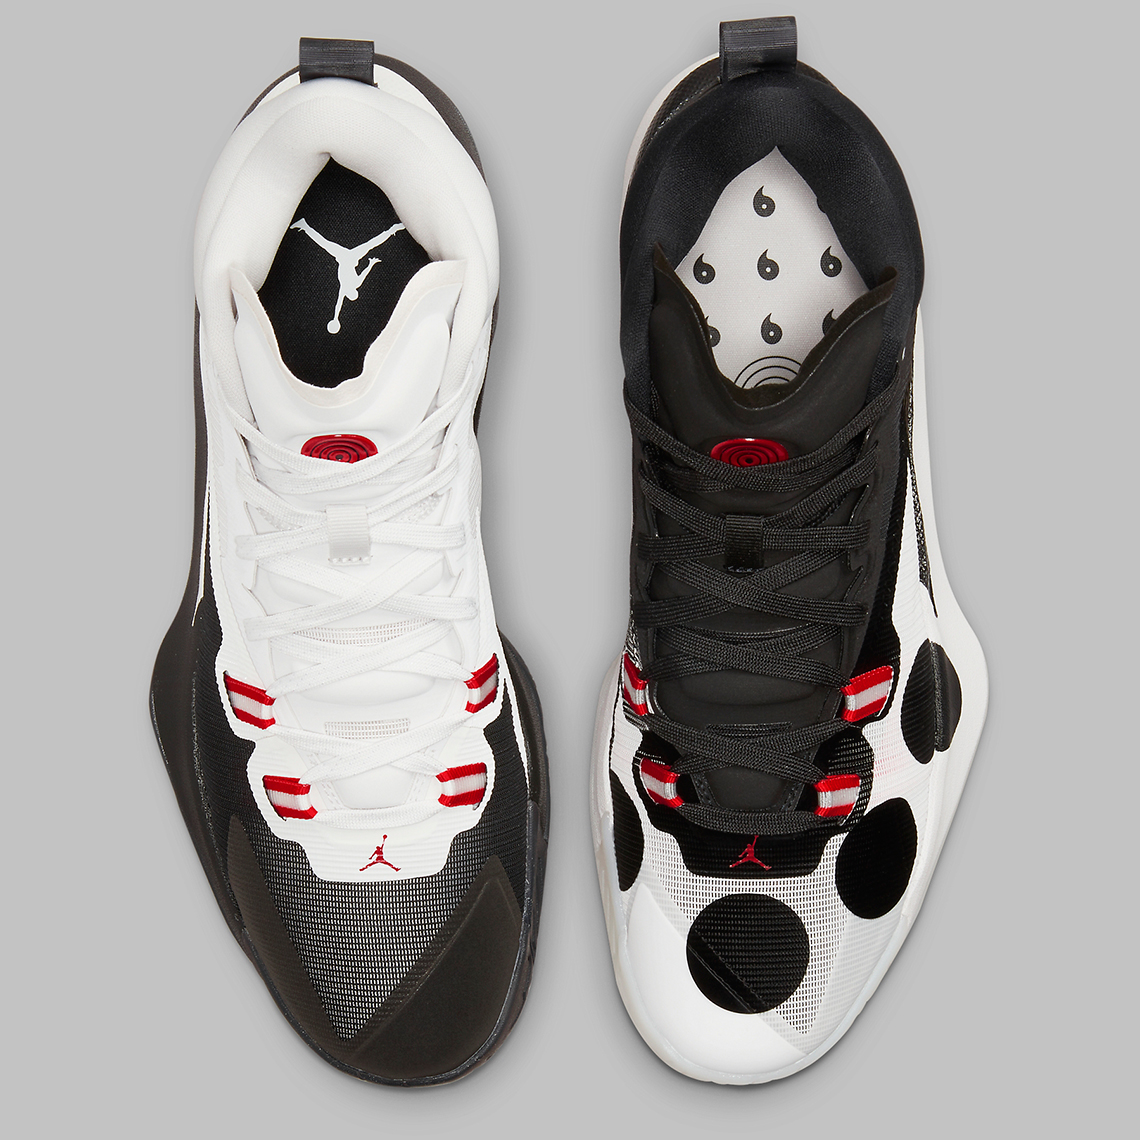 NWT Nike Jordan Mars 270 London Sp White University Red Black Dq4706 160 1